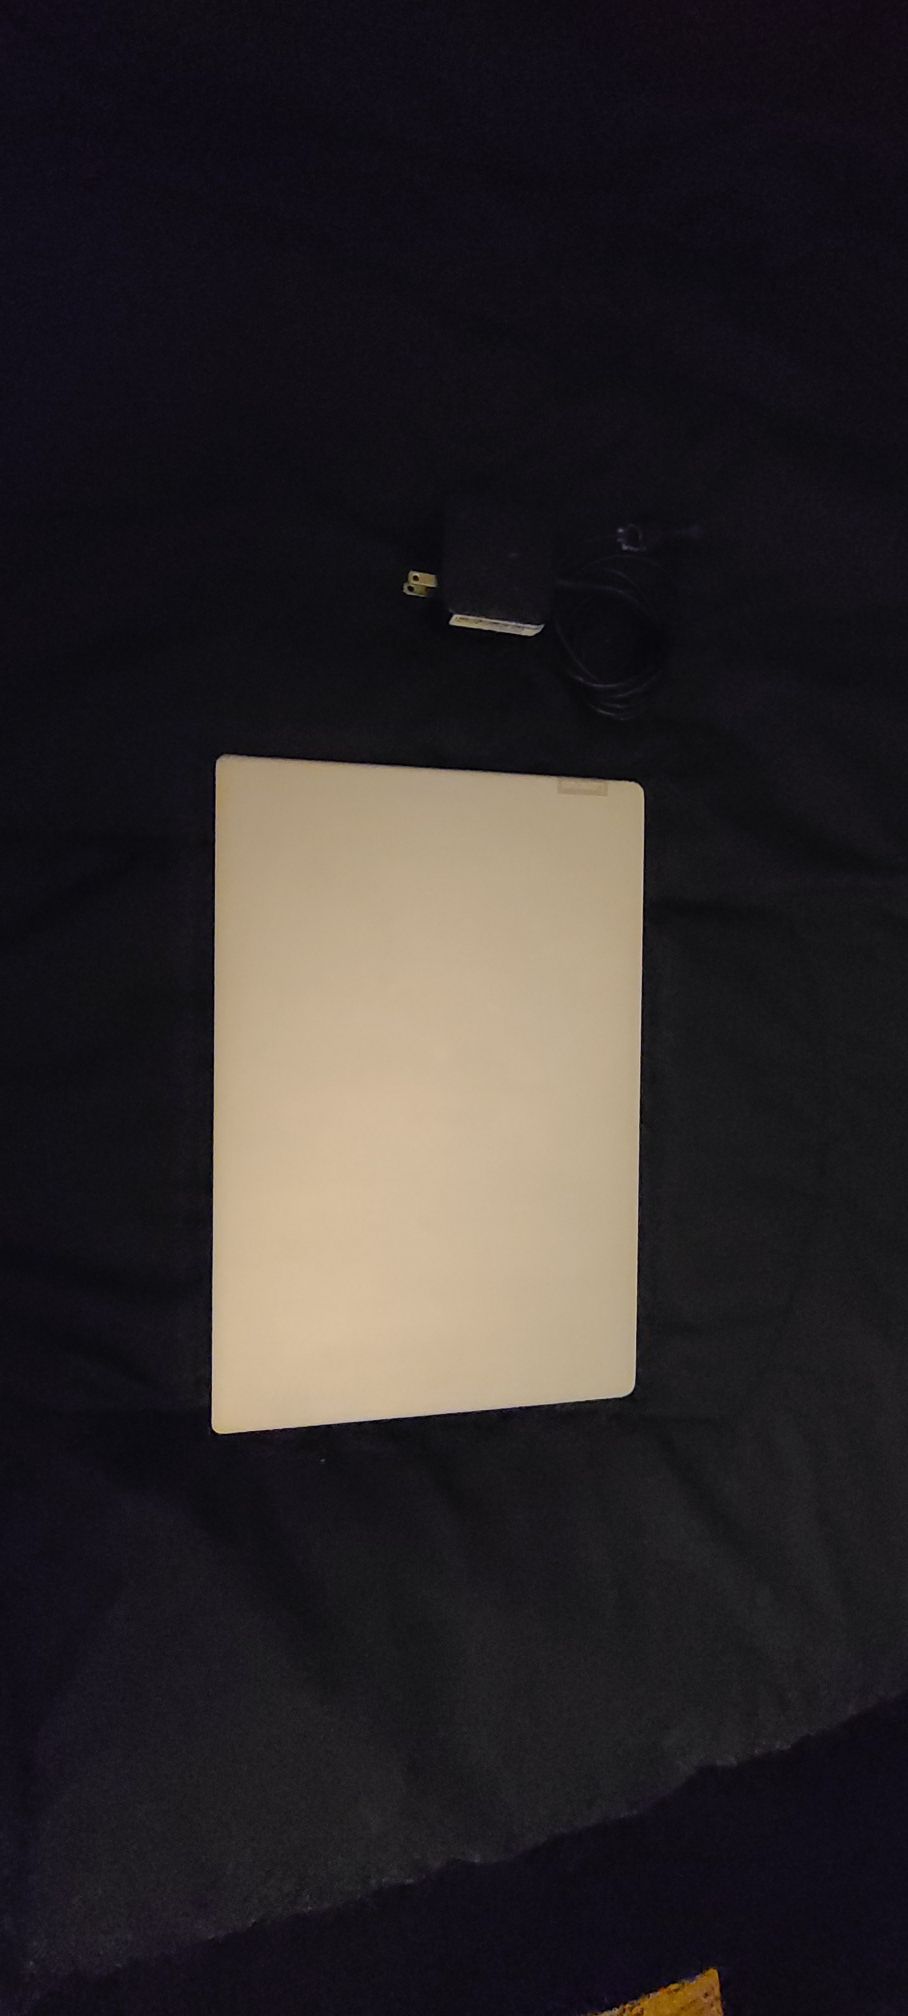 Lenovo IdeaPad 330s laptop